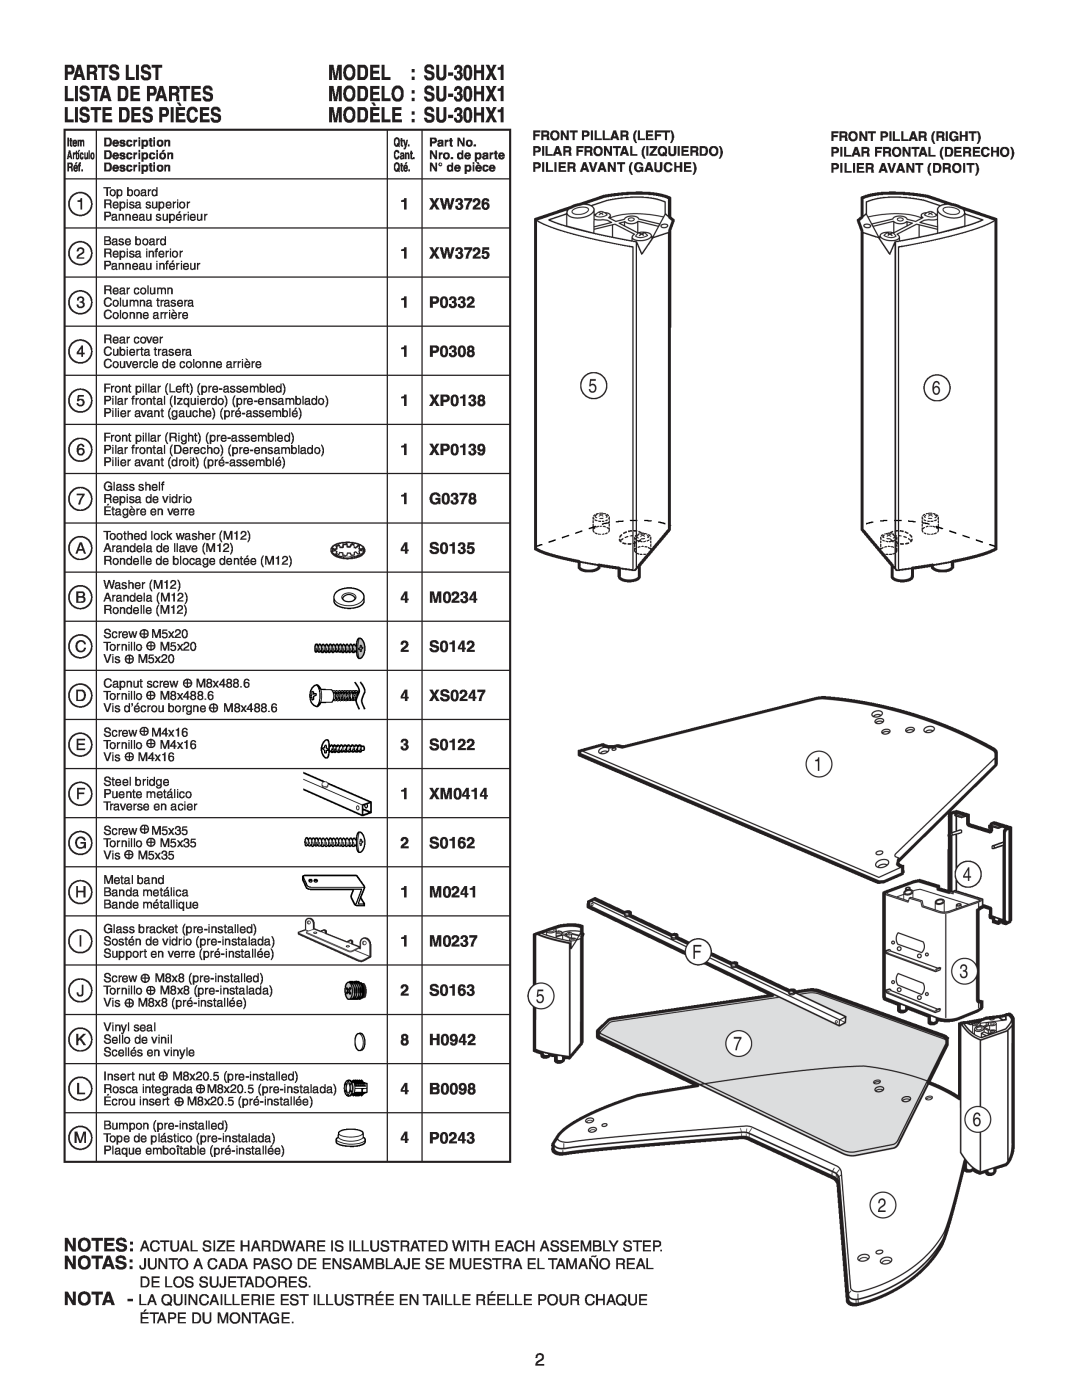 Sony manual Lista De Partes, Liste Des Pièces, Parts List, MODEL SU-30HX1 